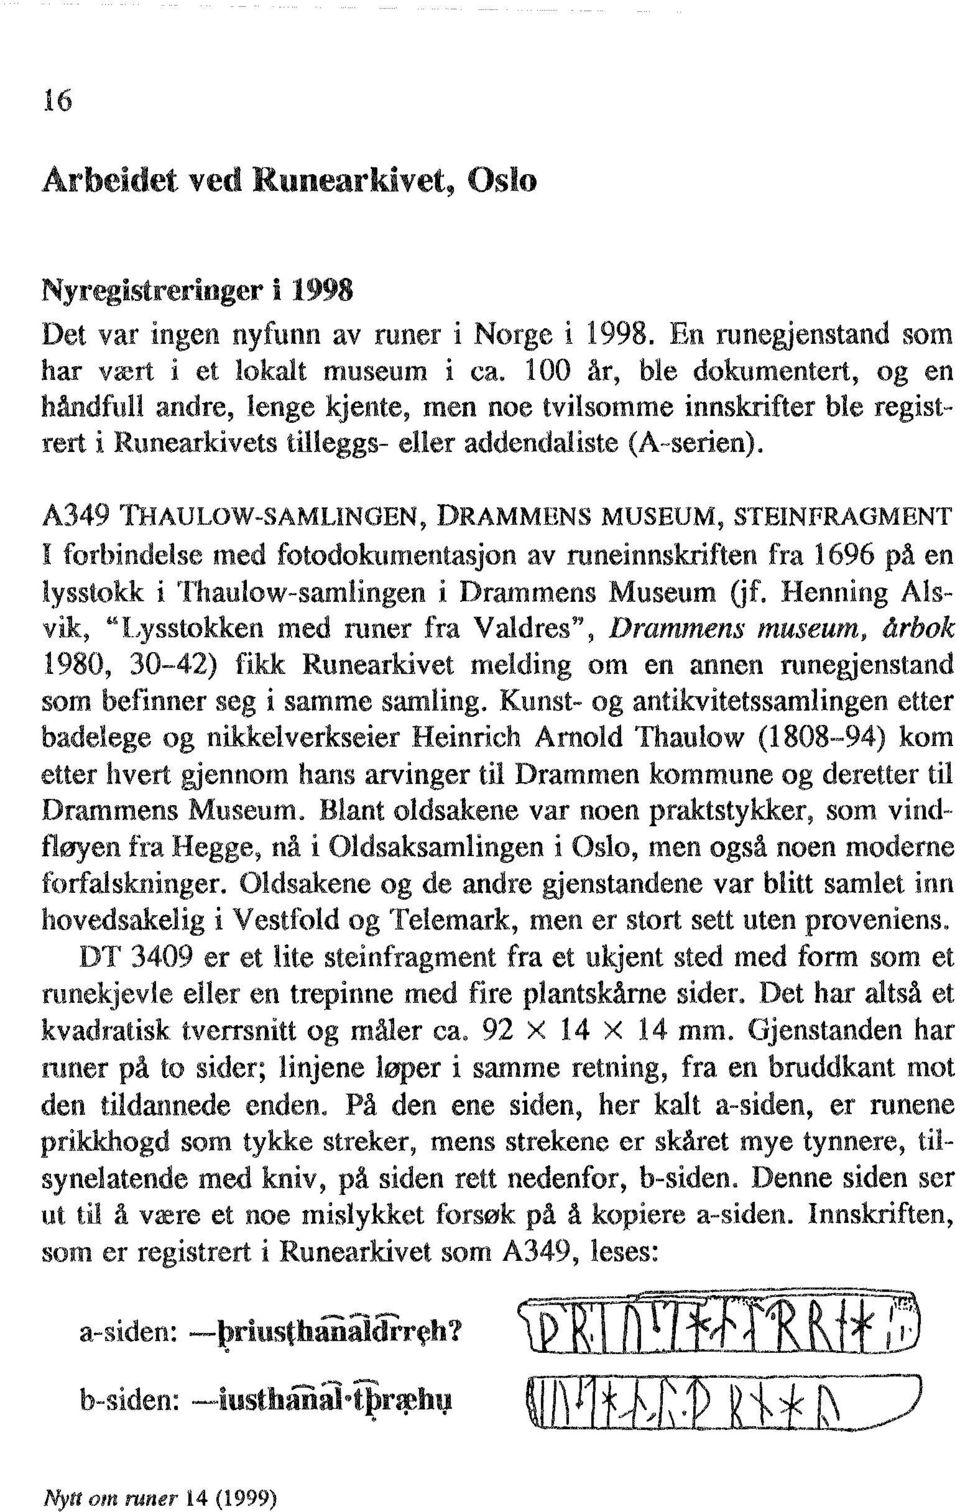 A349 THAULOW-SAMLINGEN, DRAMMENS MUSEUM, STEINFRAGMENT I forbindelse med fotodokumentasjon av runeinnskriften fra 1696 på en lysstokk i Thaulow-samlingen i Drammens Museum Gf.